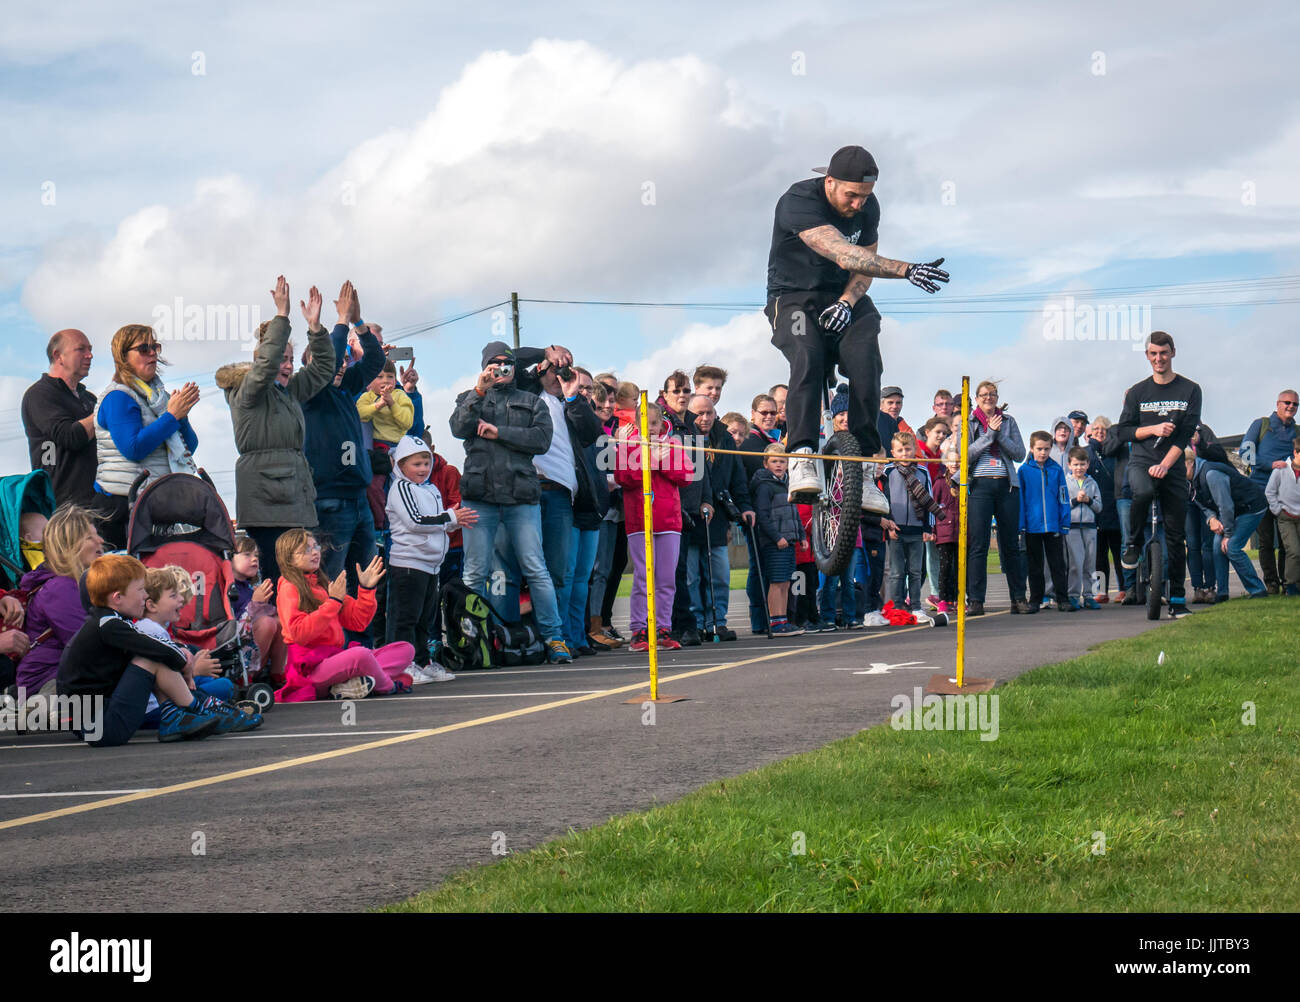 Jason Auld von Team Voodoo Einräder Durchführung stunt Sprung am Rad und Kotflügel Event 2016, East Fortune, East Lothian, Schottland, Großbritannien Stockfoto